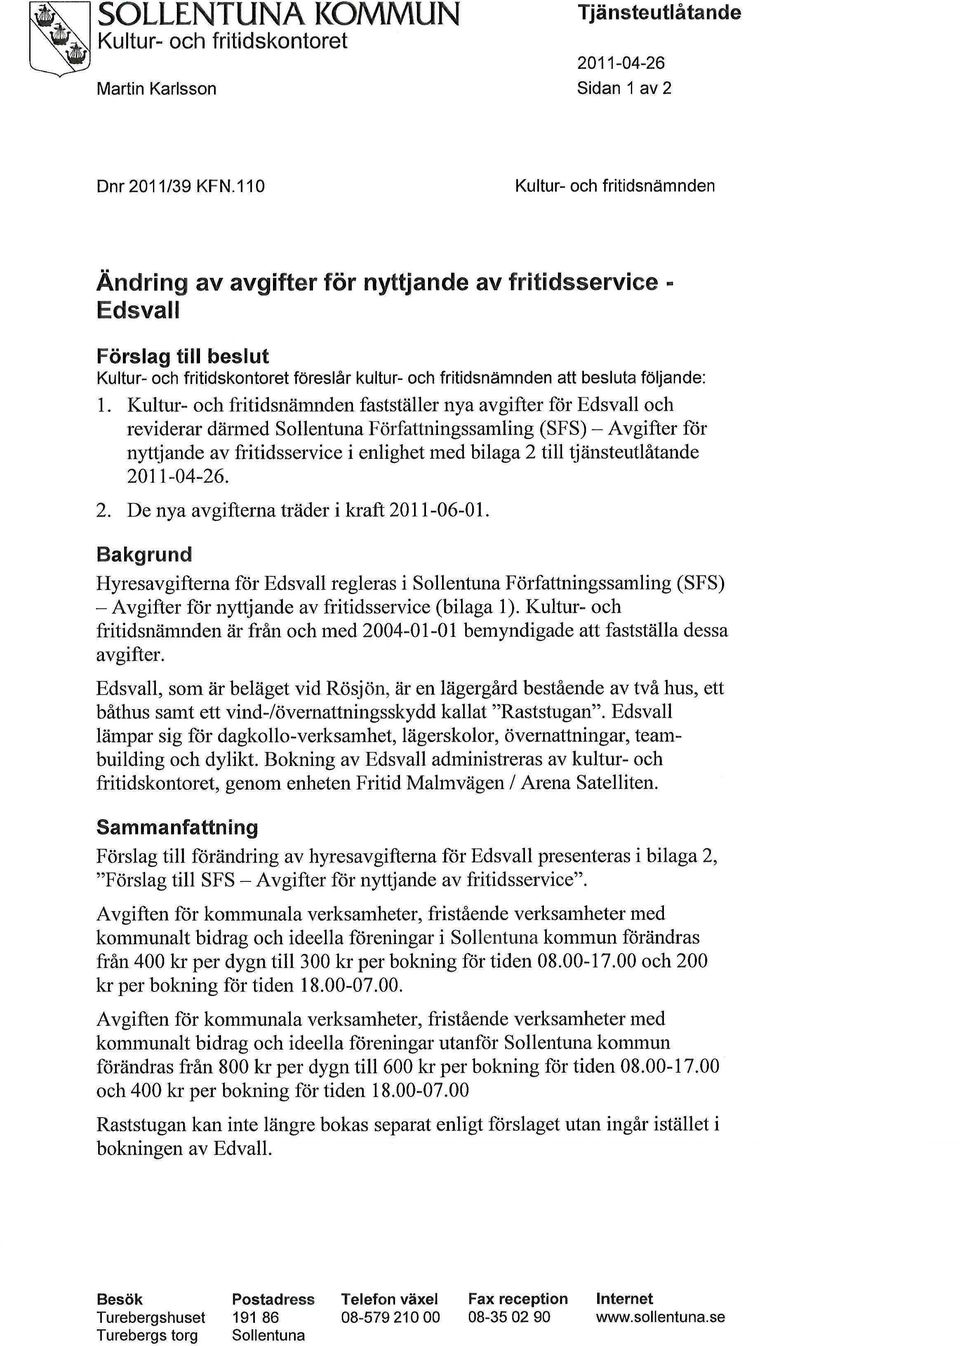 1. Kultur- och fritidsnämnden fastställer nya avgifter för Edsvall och reviderar därmed Sollentuna Författningssamling (SFS) - Avgifter för nyttjande av fritidsservice i enlighet med bilaga 2 till